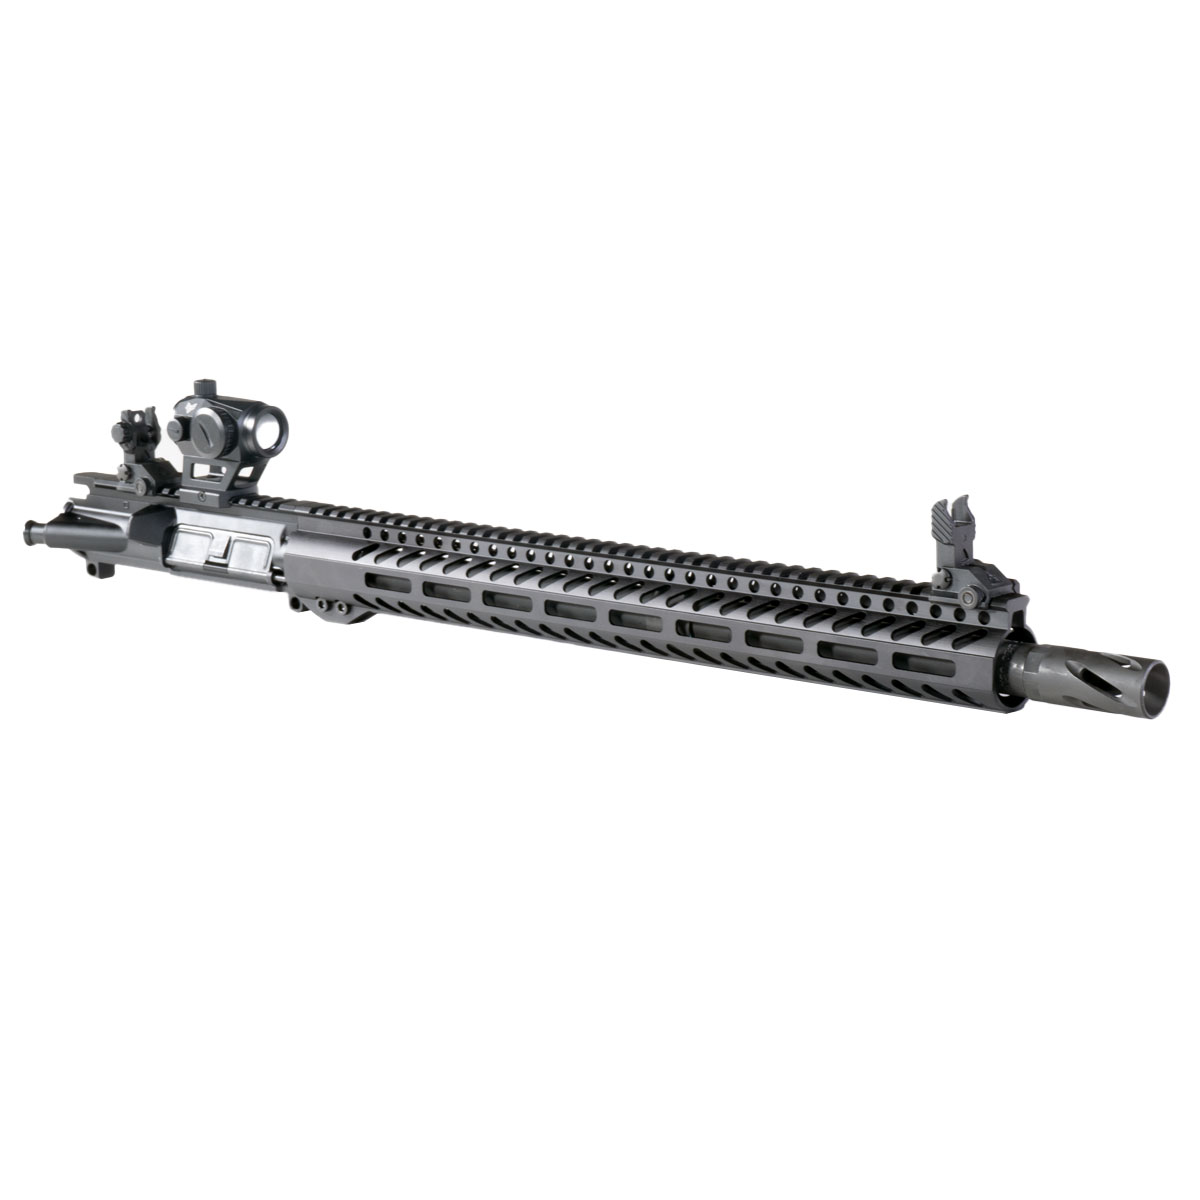 DD 'Lead Farmer' 18-inch AR-15 12.7x42 (.50 BW) Manganese Phosphate Rifle Upper Build Kit